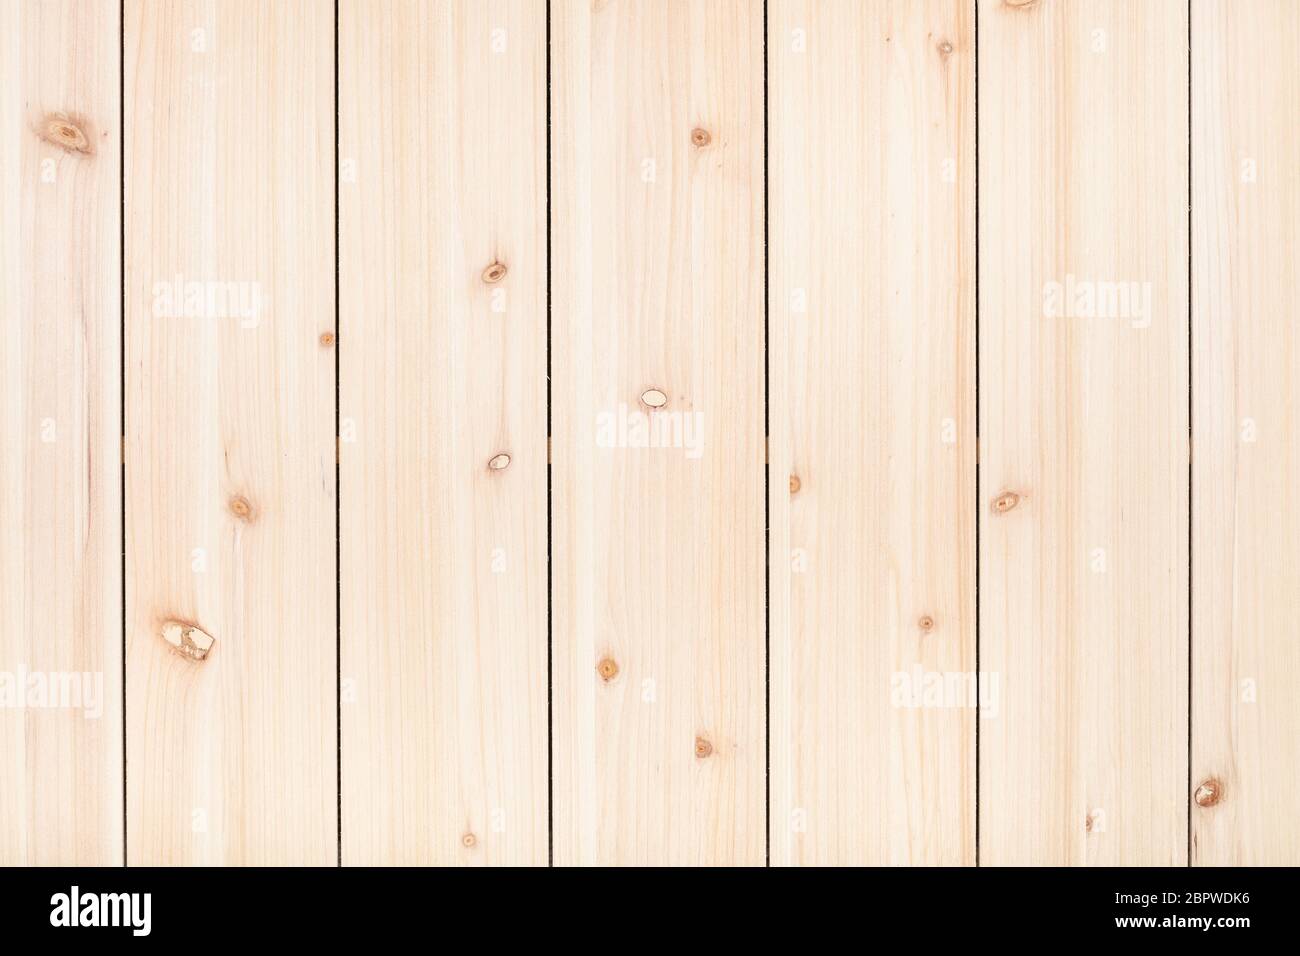 sfondo in legno - pannello in legno non verniciato da assi verticali di pino stretto Foto Stock